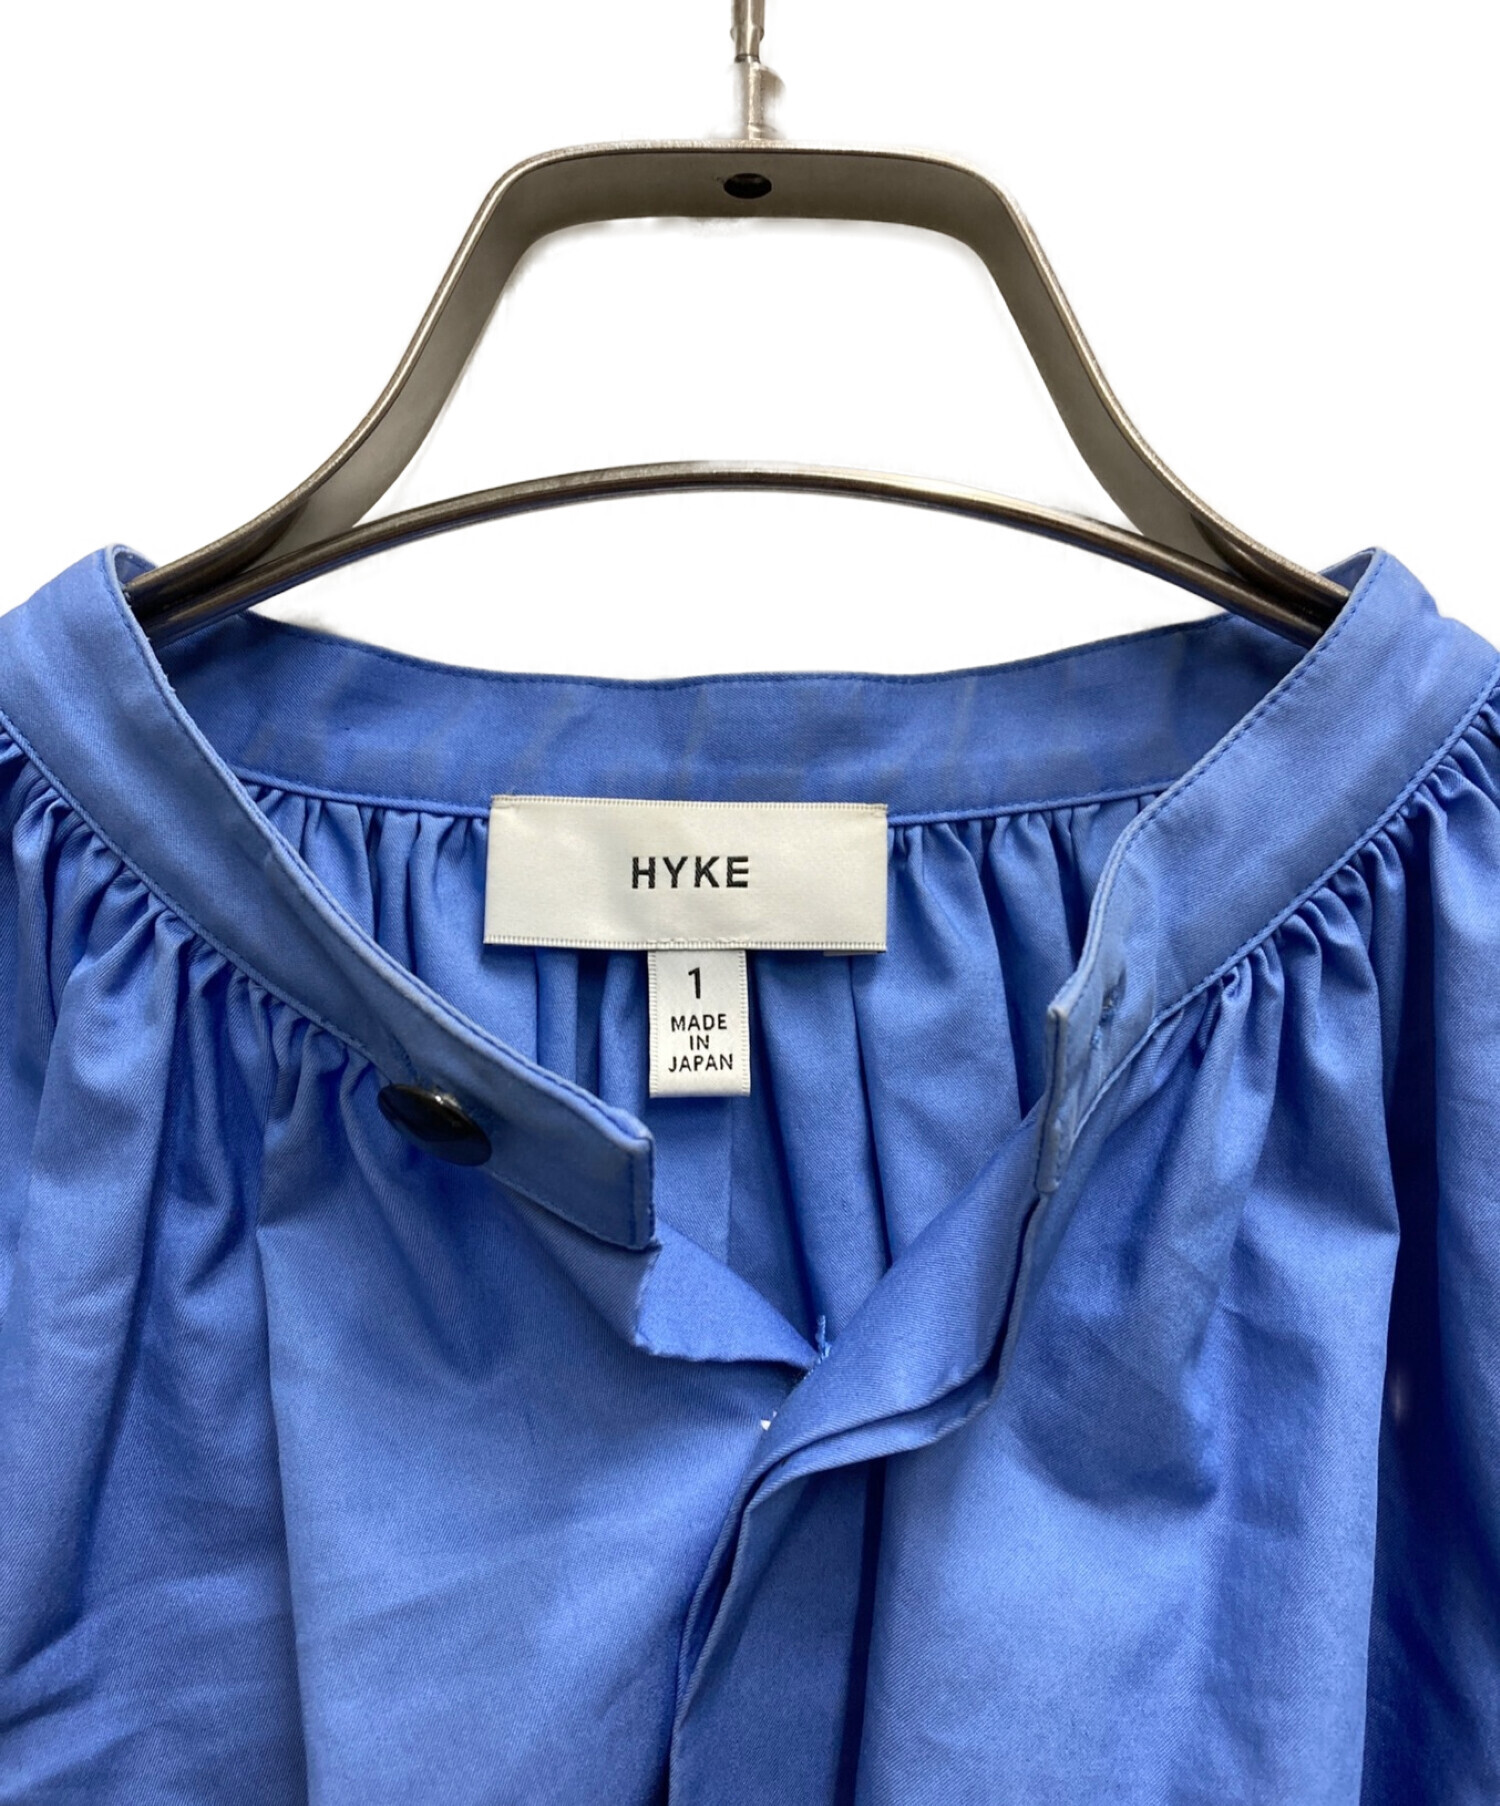 HYKE (ハイク) ギャザースタンドカラーシャツ ブルー サイズ:1